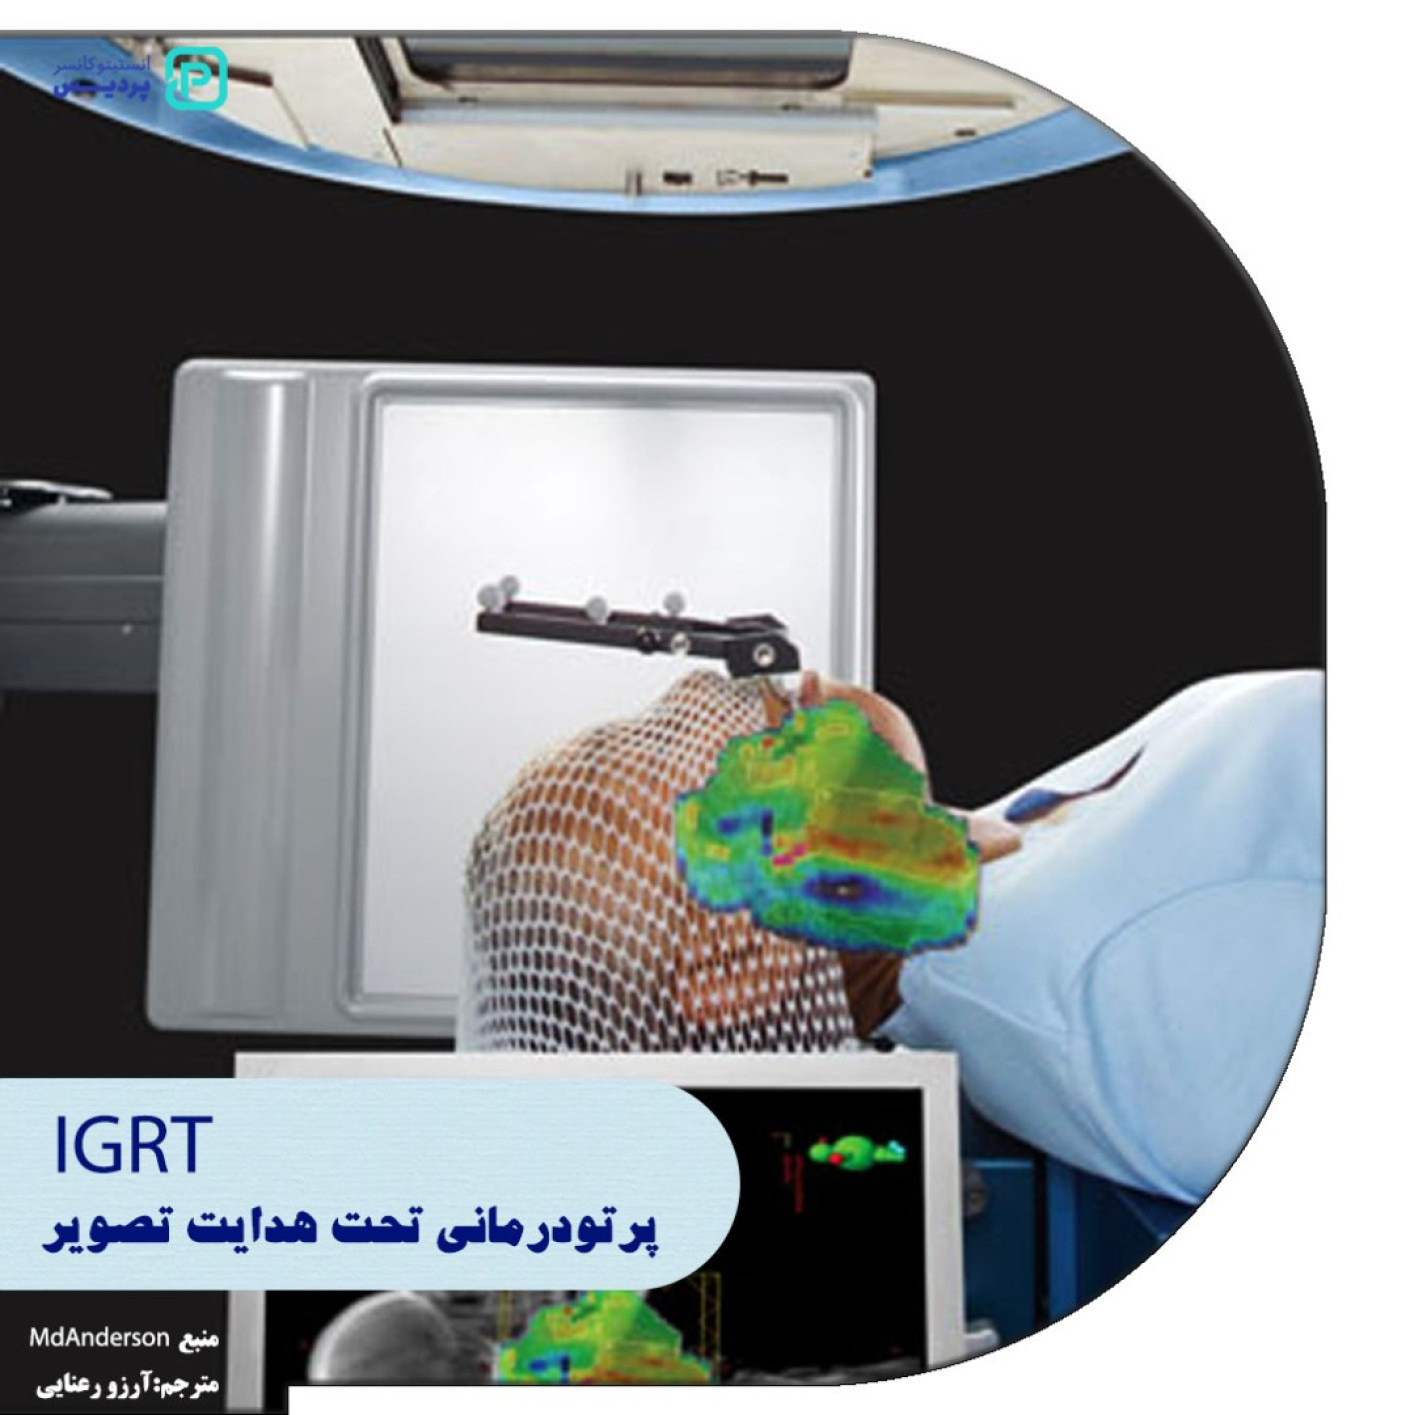 پرتو درمانی تحت هدایت تصویر IGRT چه کاربردی دارد